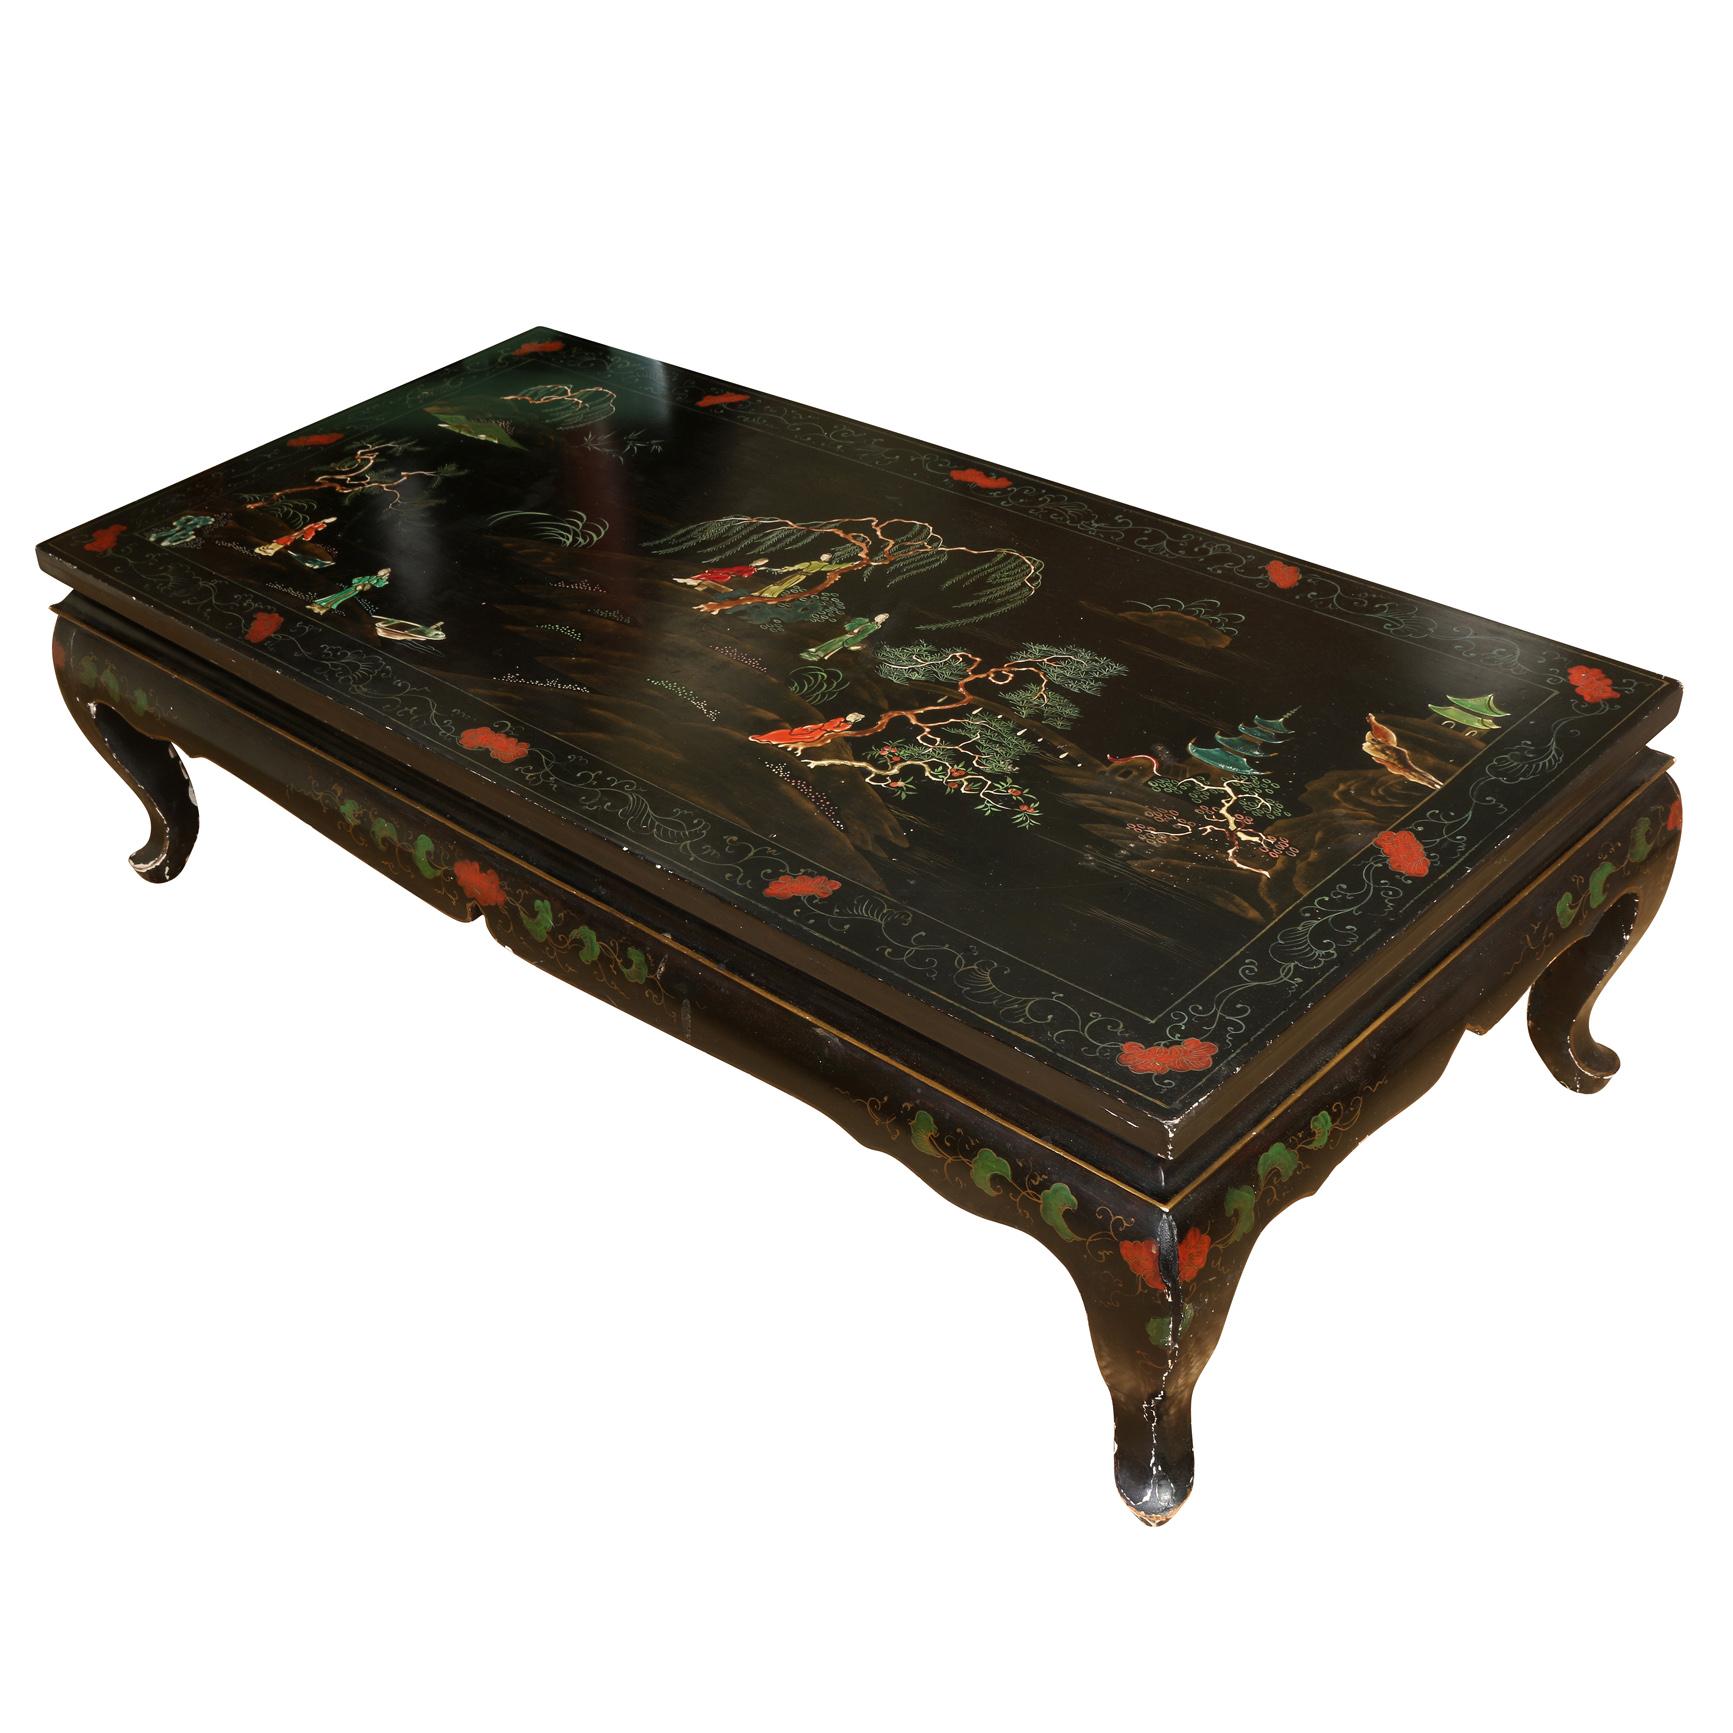 Une table basse vintage de style asiatique, peinte à la main et colorée, représentant des personnages et des arbres dans des paysages. La table est rectangulaire avec des pieds cabriole.